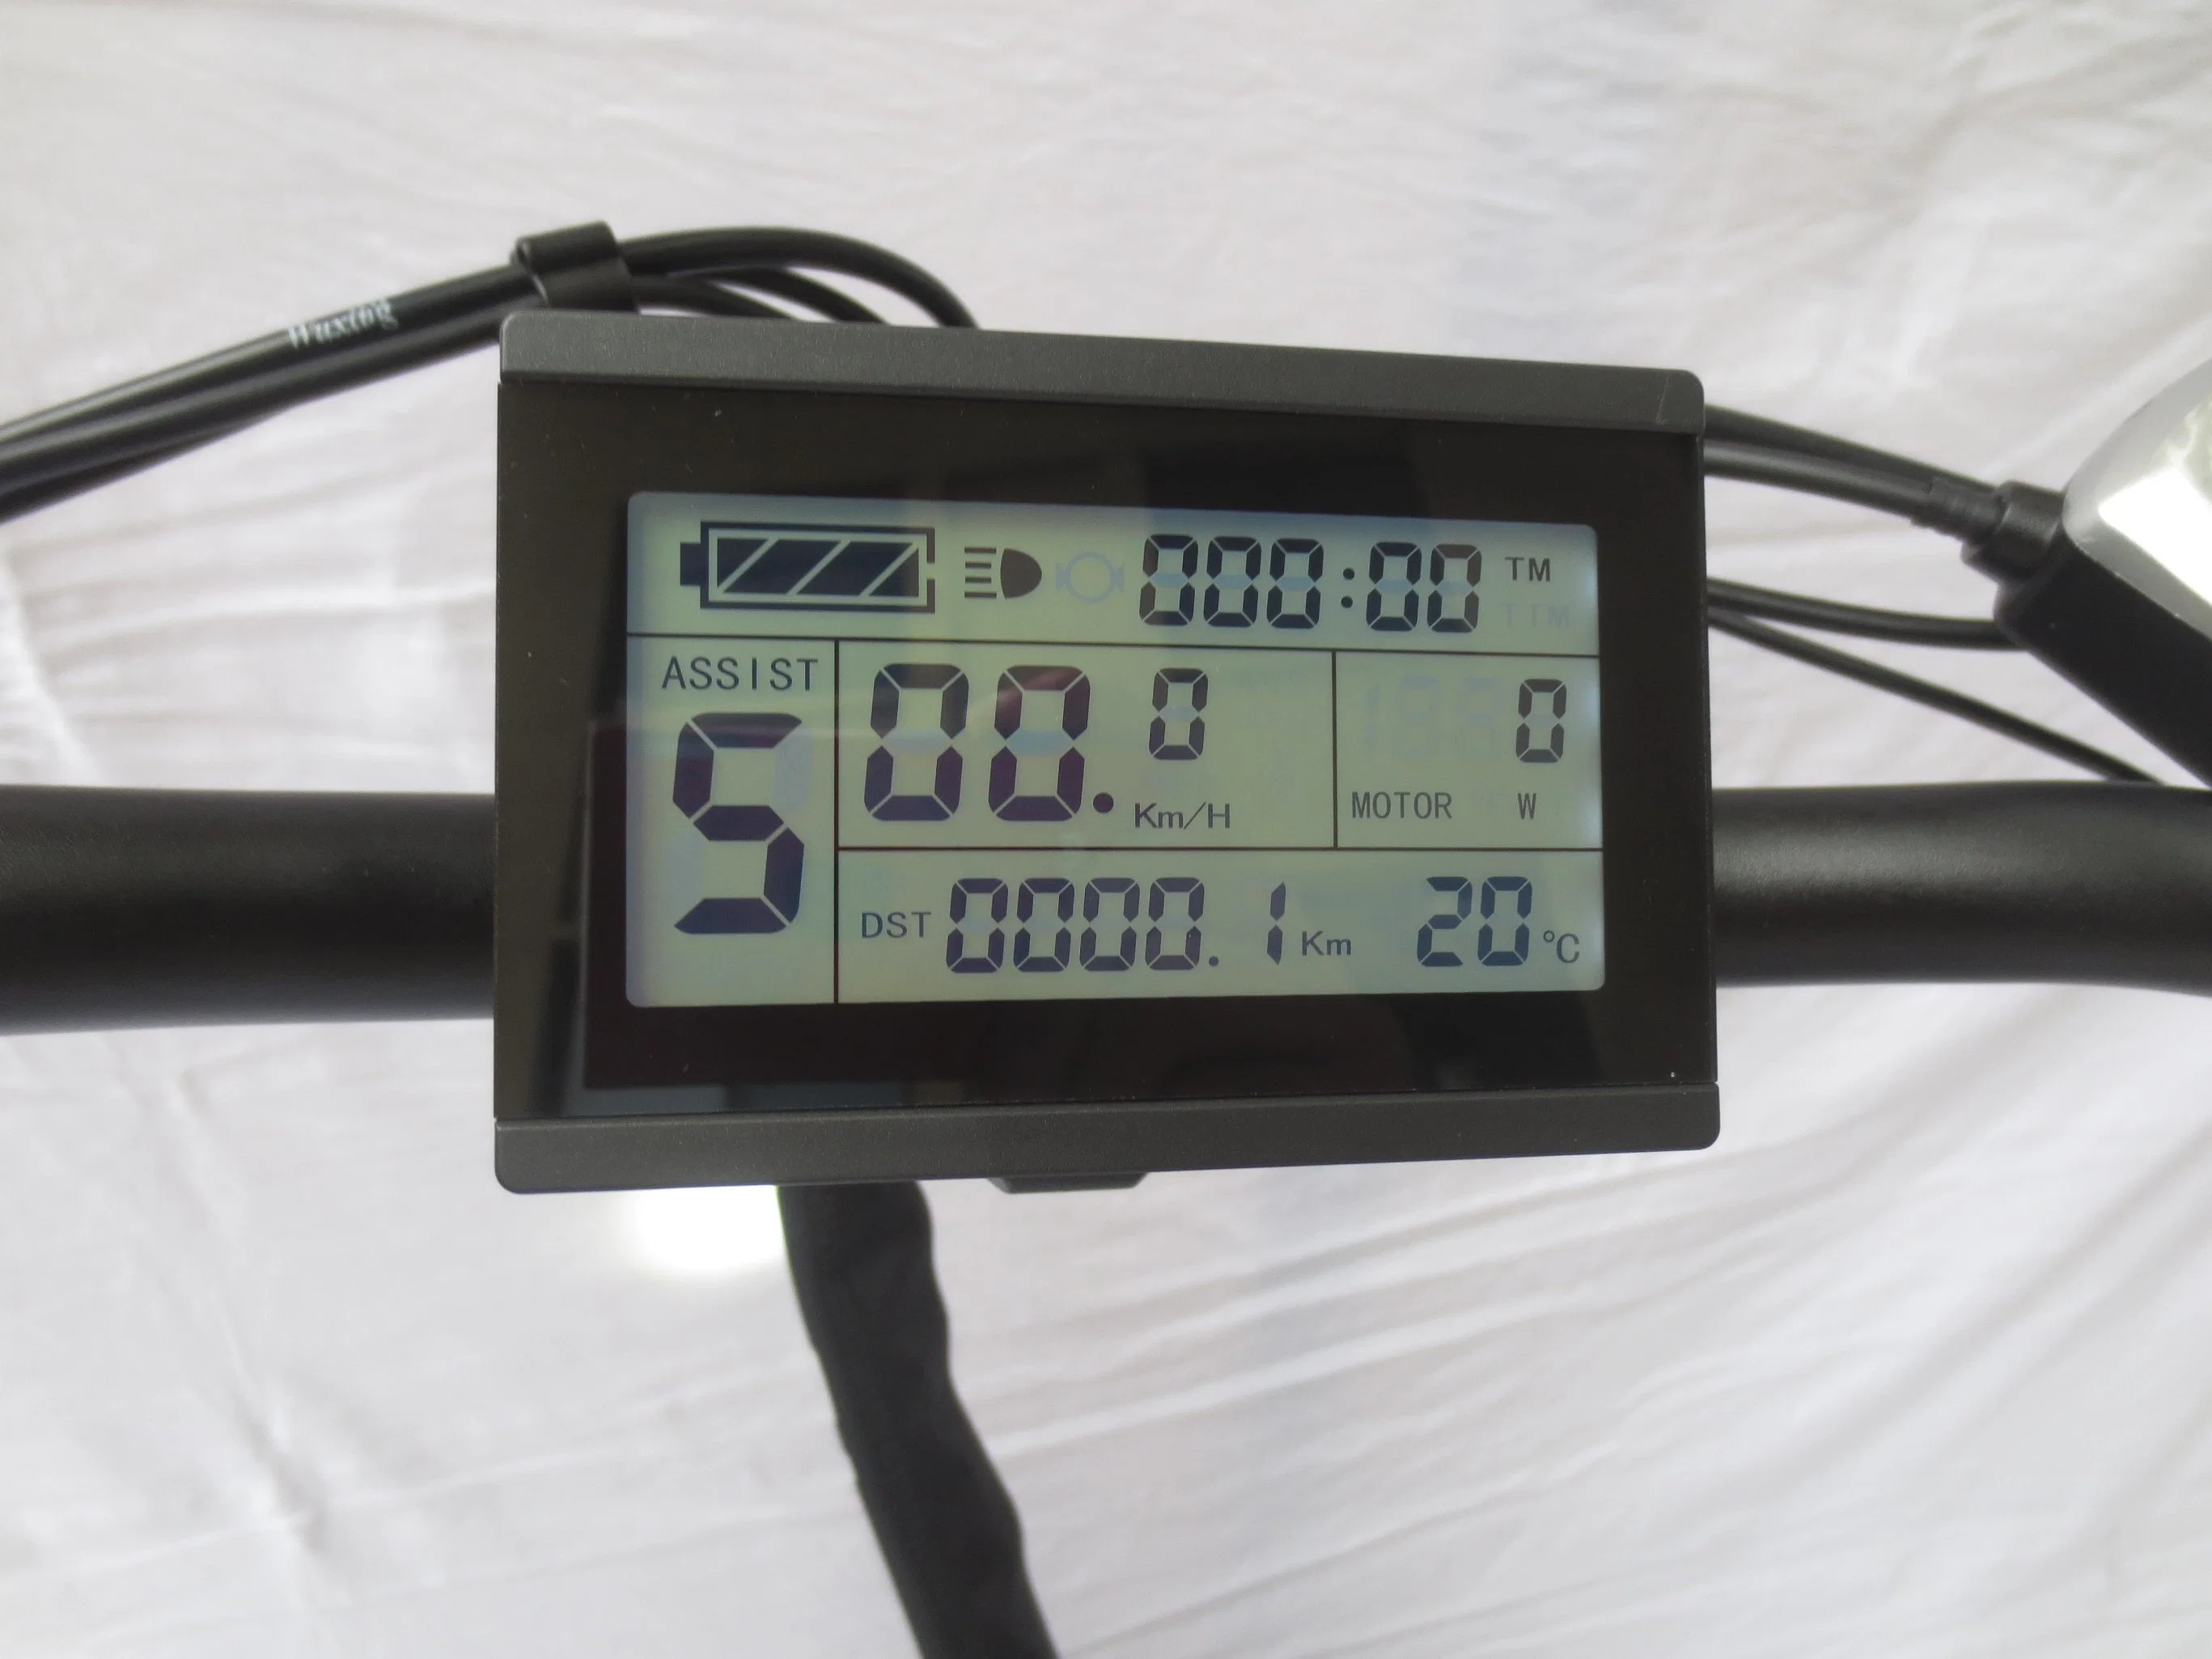 أوكازيون كويني الساخن إطار ألومنيوم CE أللوي دراجة هوائية 48 فولت 1000 واط دراجة كهربائية قياس 20 بوصة